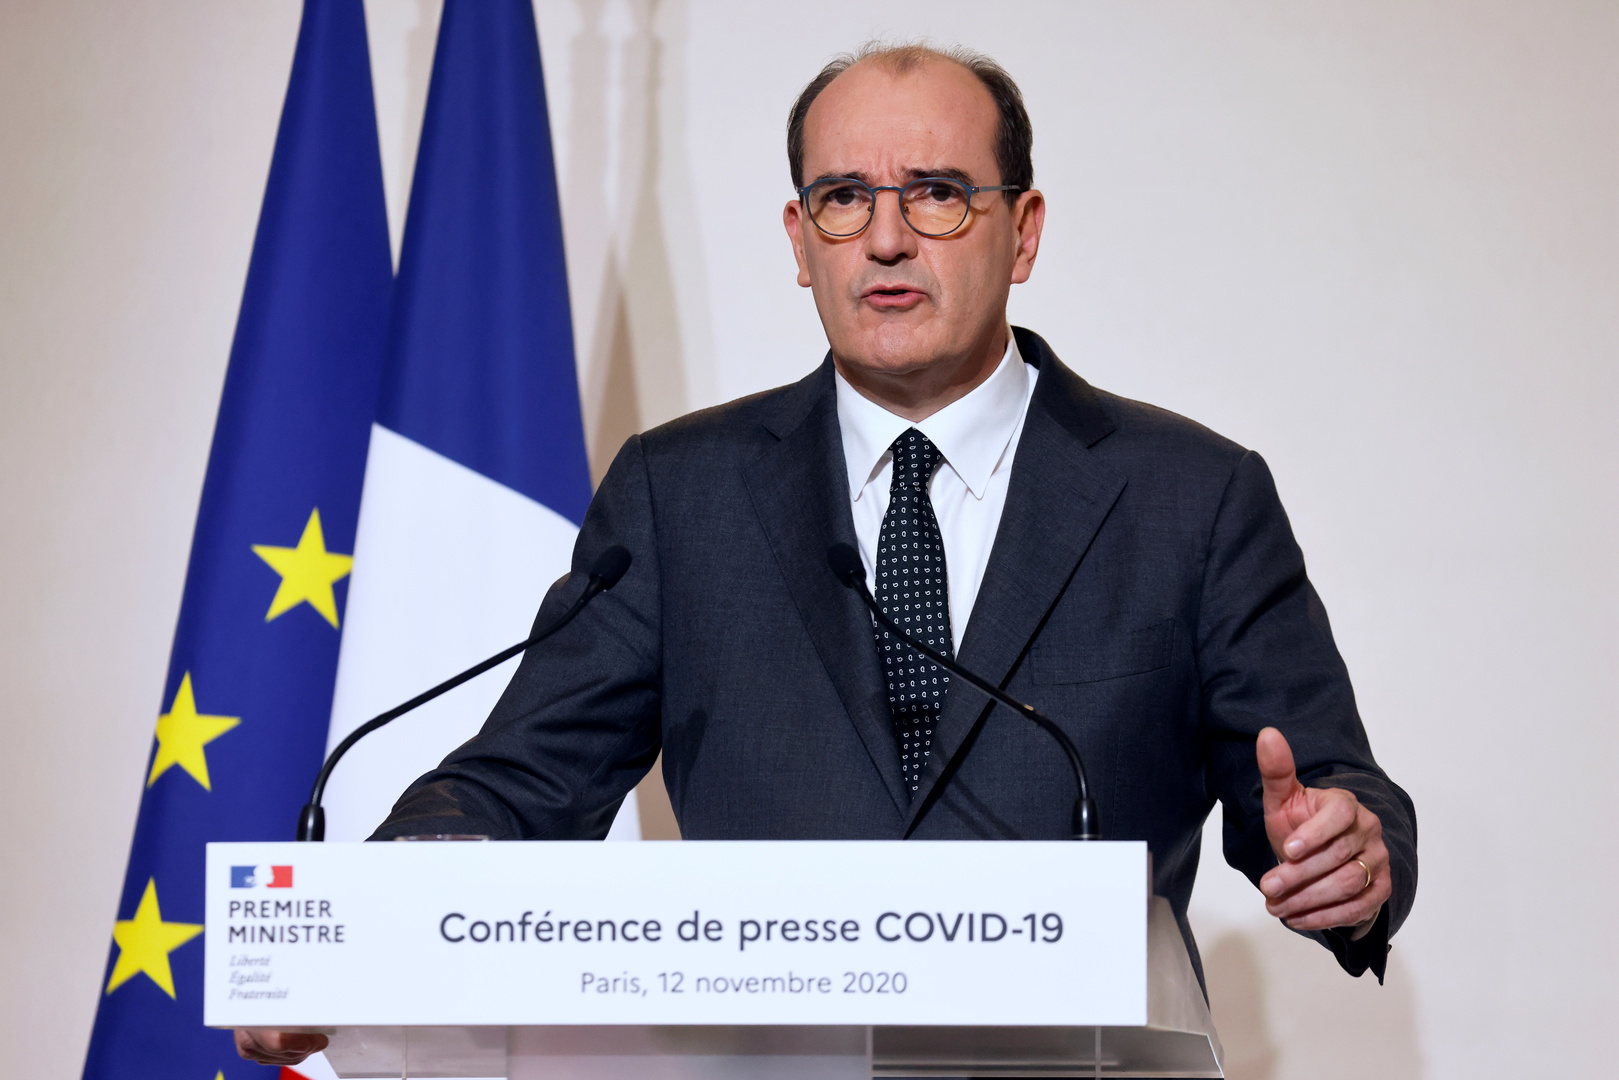   فرنسا تبدء حملة التطعيم بلقاح كورونا نهاية ديسمبر